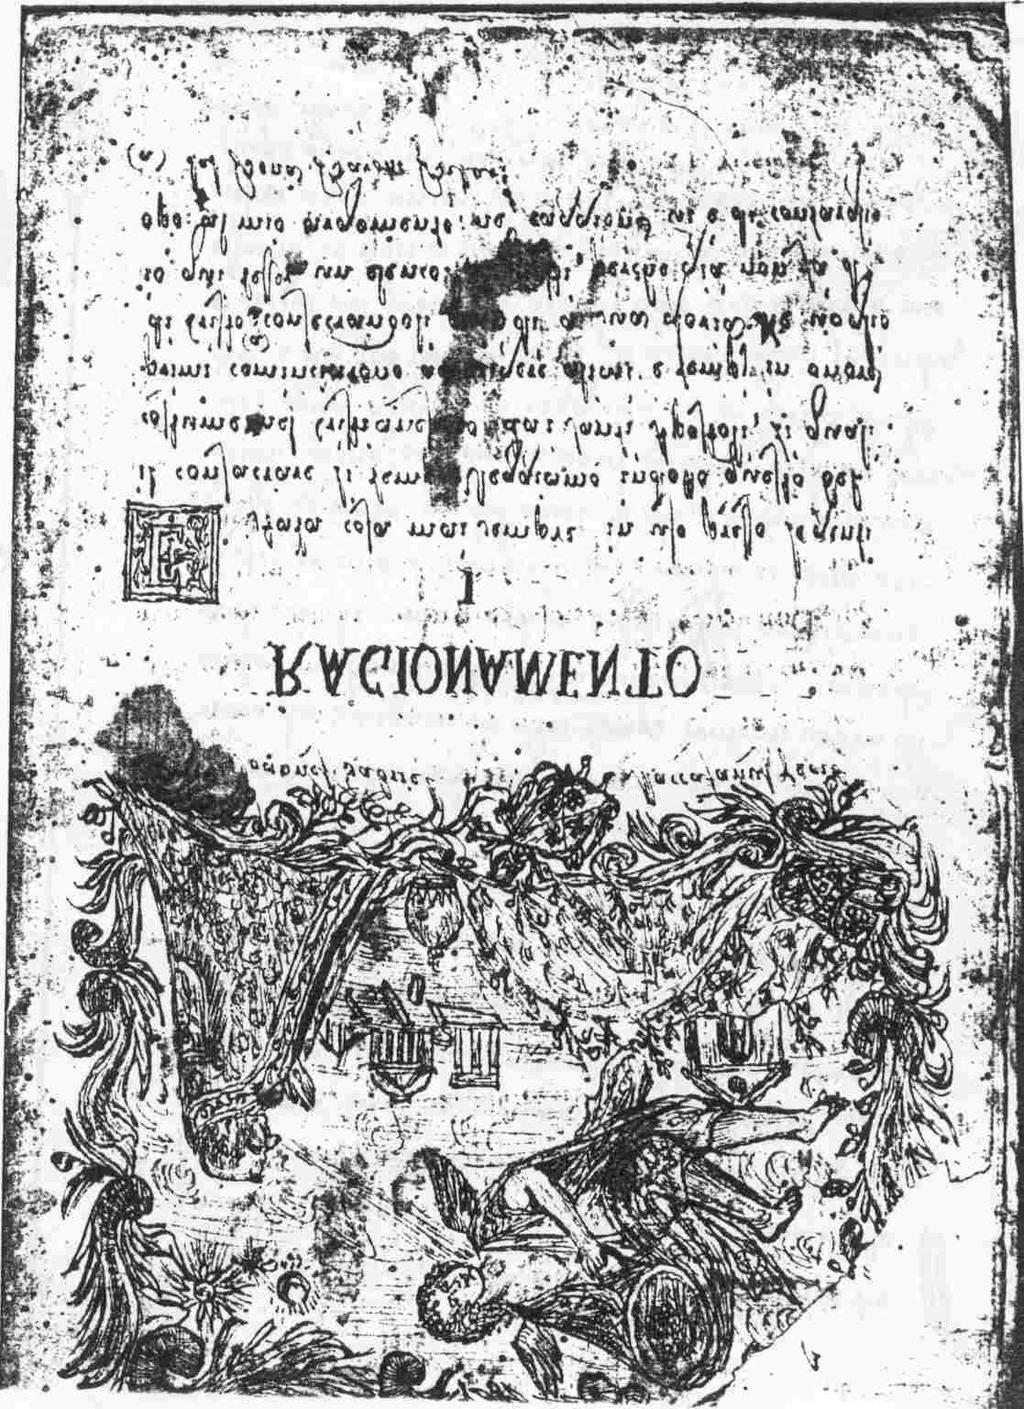 Anno 1780 Manoscritta Gian Gabriello Maccafani Ne